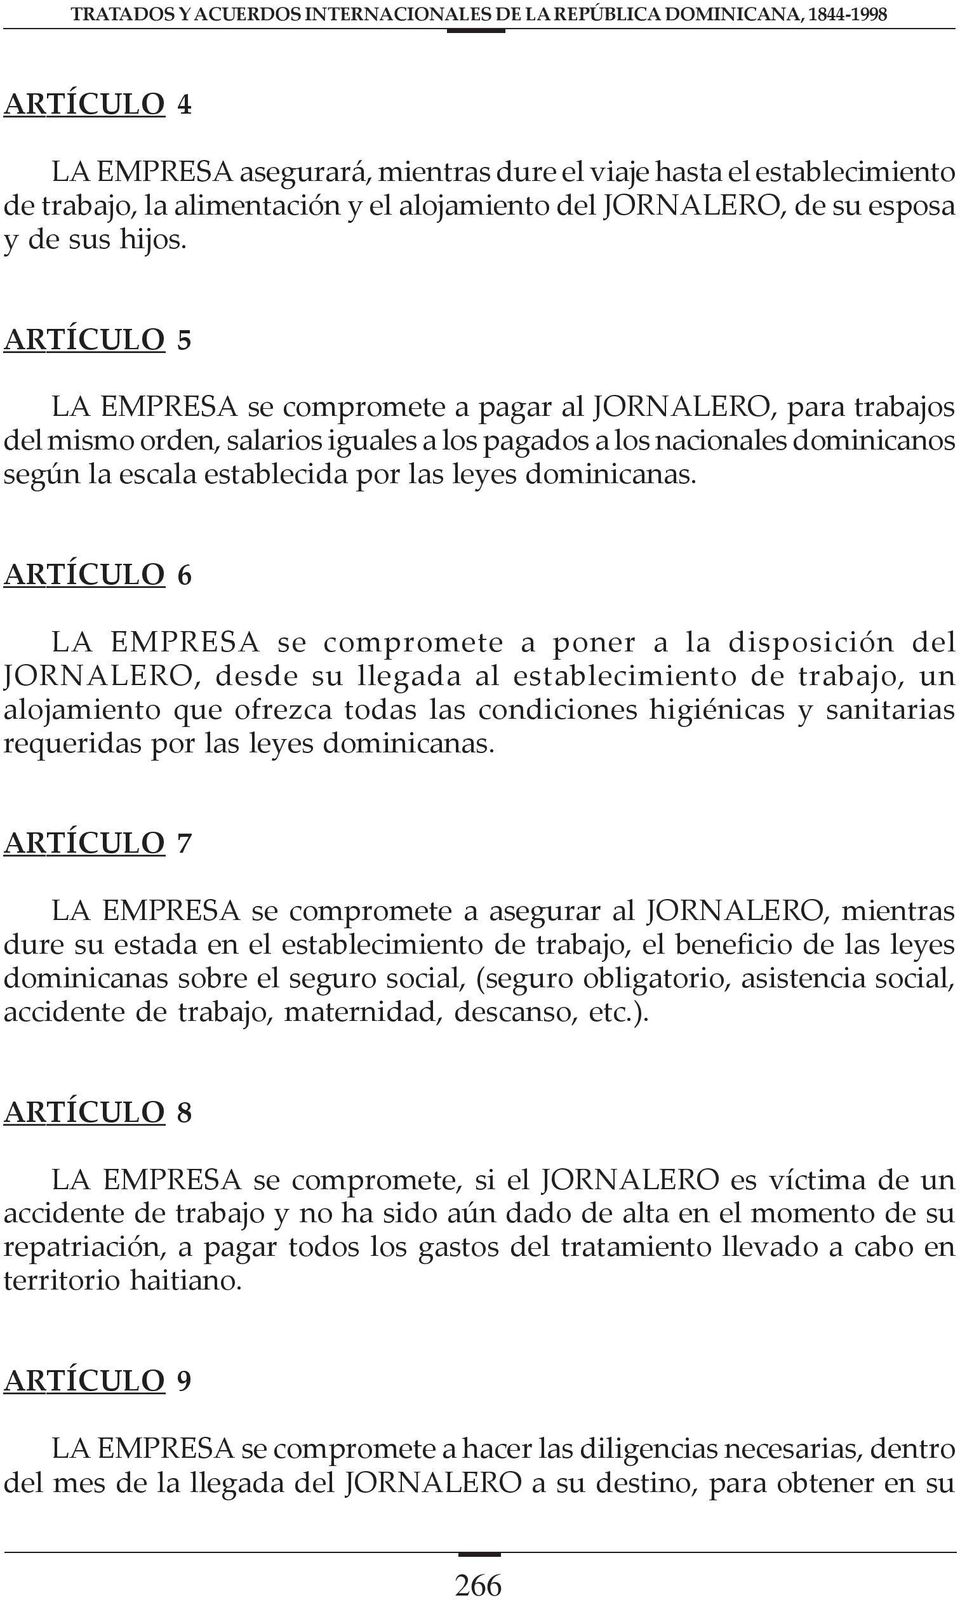 ARTÍCULO 5 LA EMPRESA se compromete a pagar al JORNALERO, para trabajos del mismo orden, salarios iguales a los pagados a los nacionales dominicanos según la escala establecida por las leyes